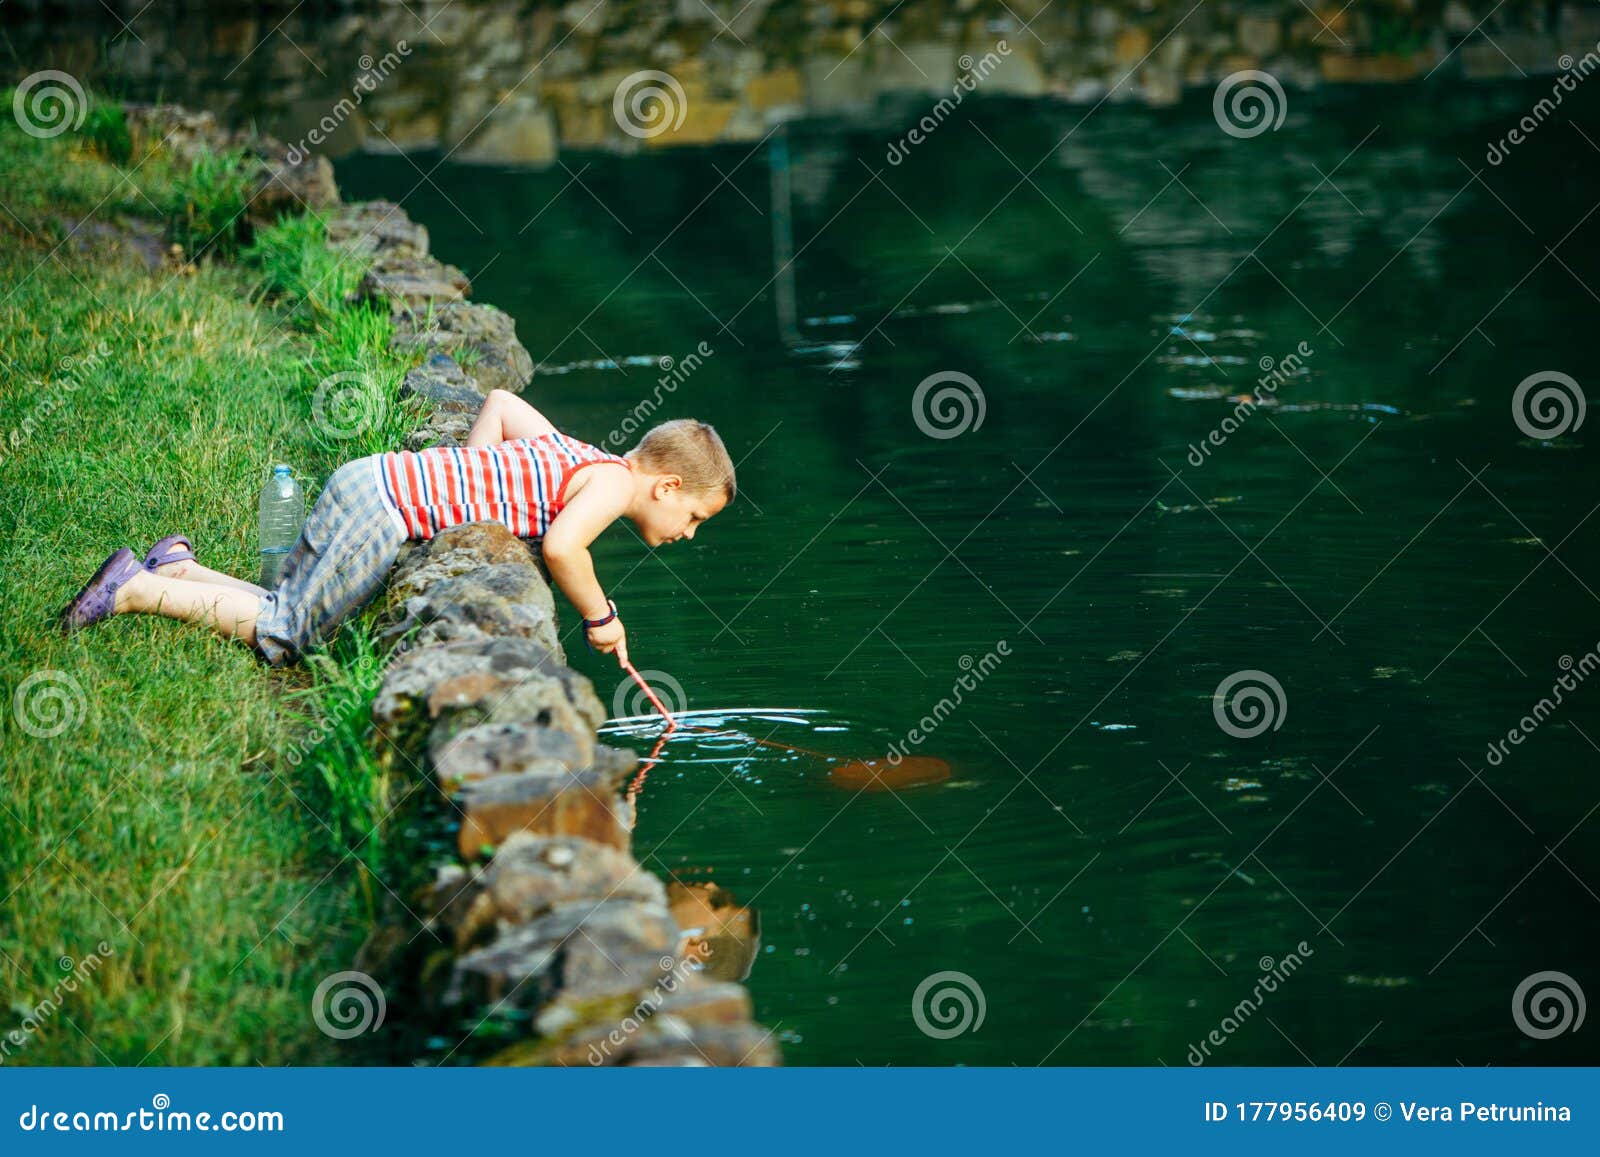 https://thumbs.dreamstime.com/z/lviv-ukraine-june-kid-fish-net-looking-tadpole-lake-lviv-ukraine-june-kid-fish-net-looking-tadpole-lake-copy-space-177956409.jpg